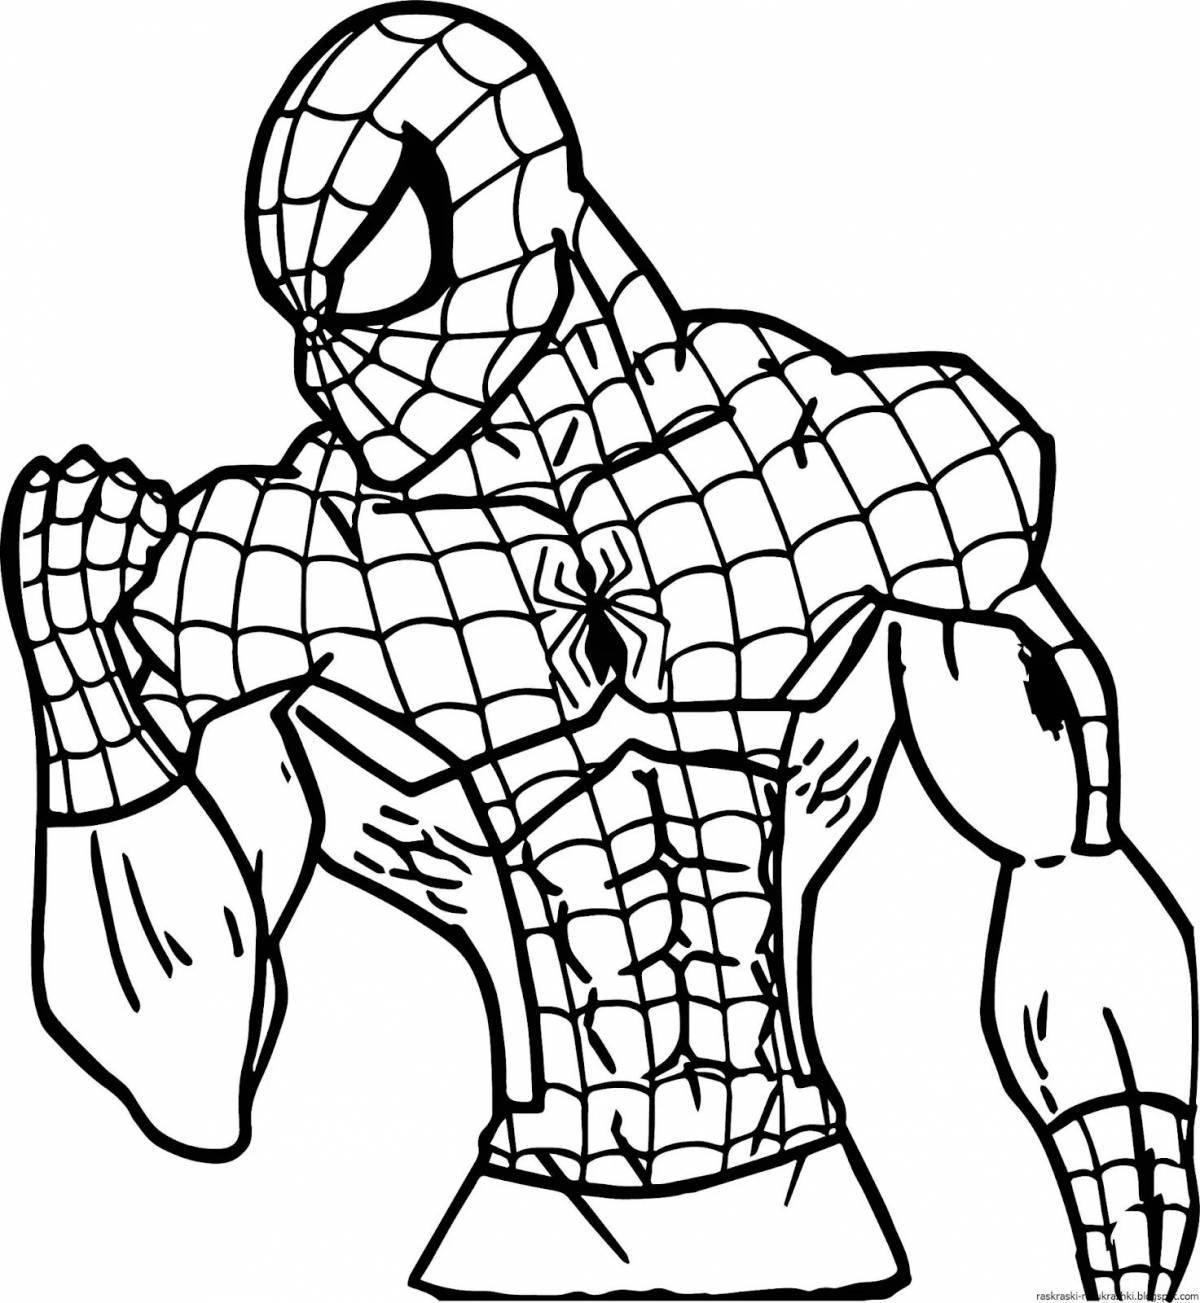 Комическая раскраска человек-паук фото